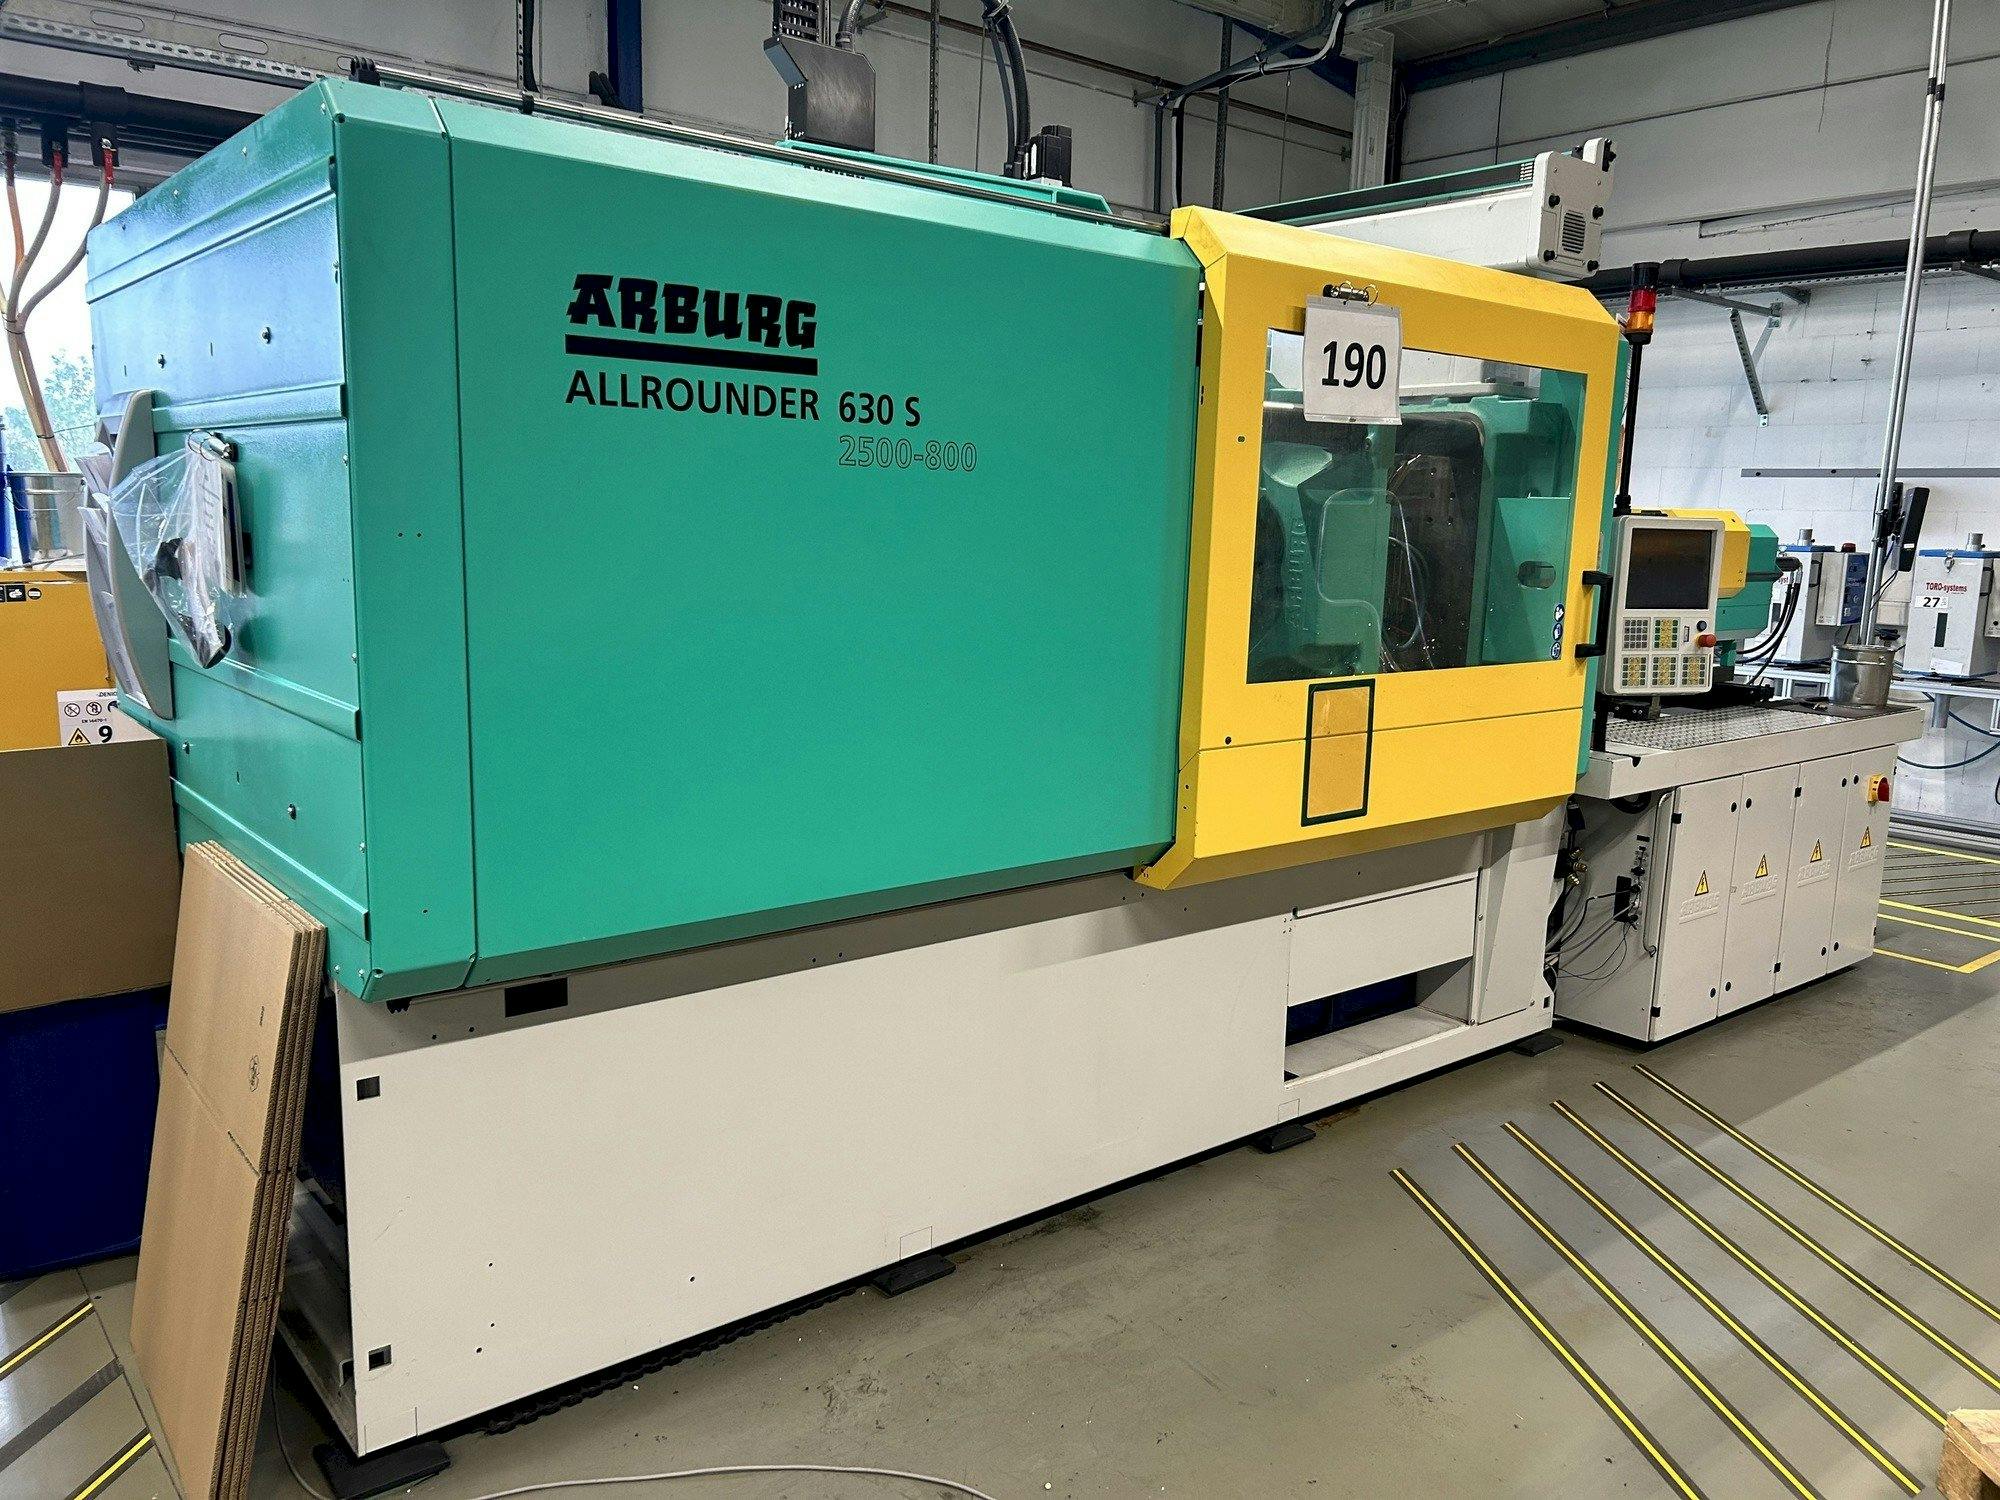 Vooraanzicht  van Arburg Allrounder 630S 2500-800 (2016)  machine